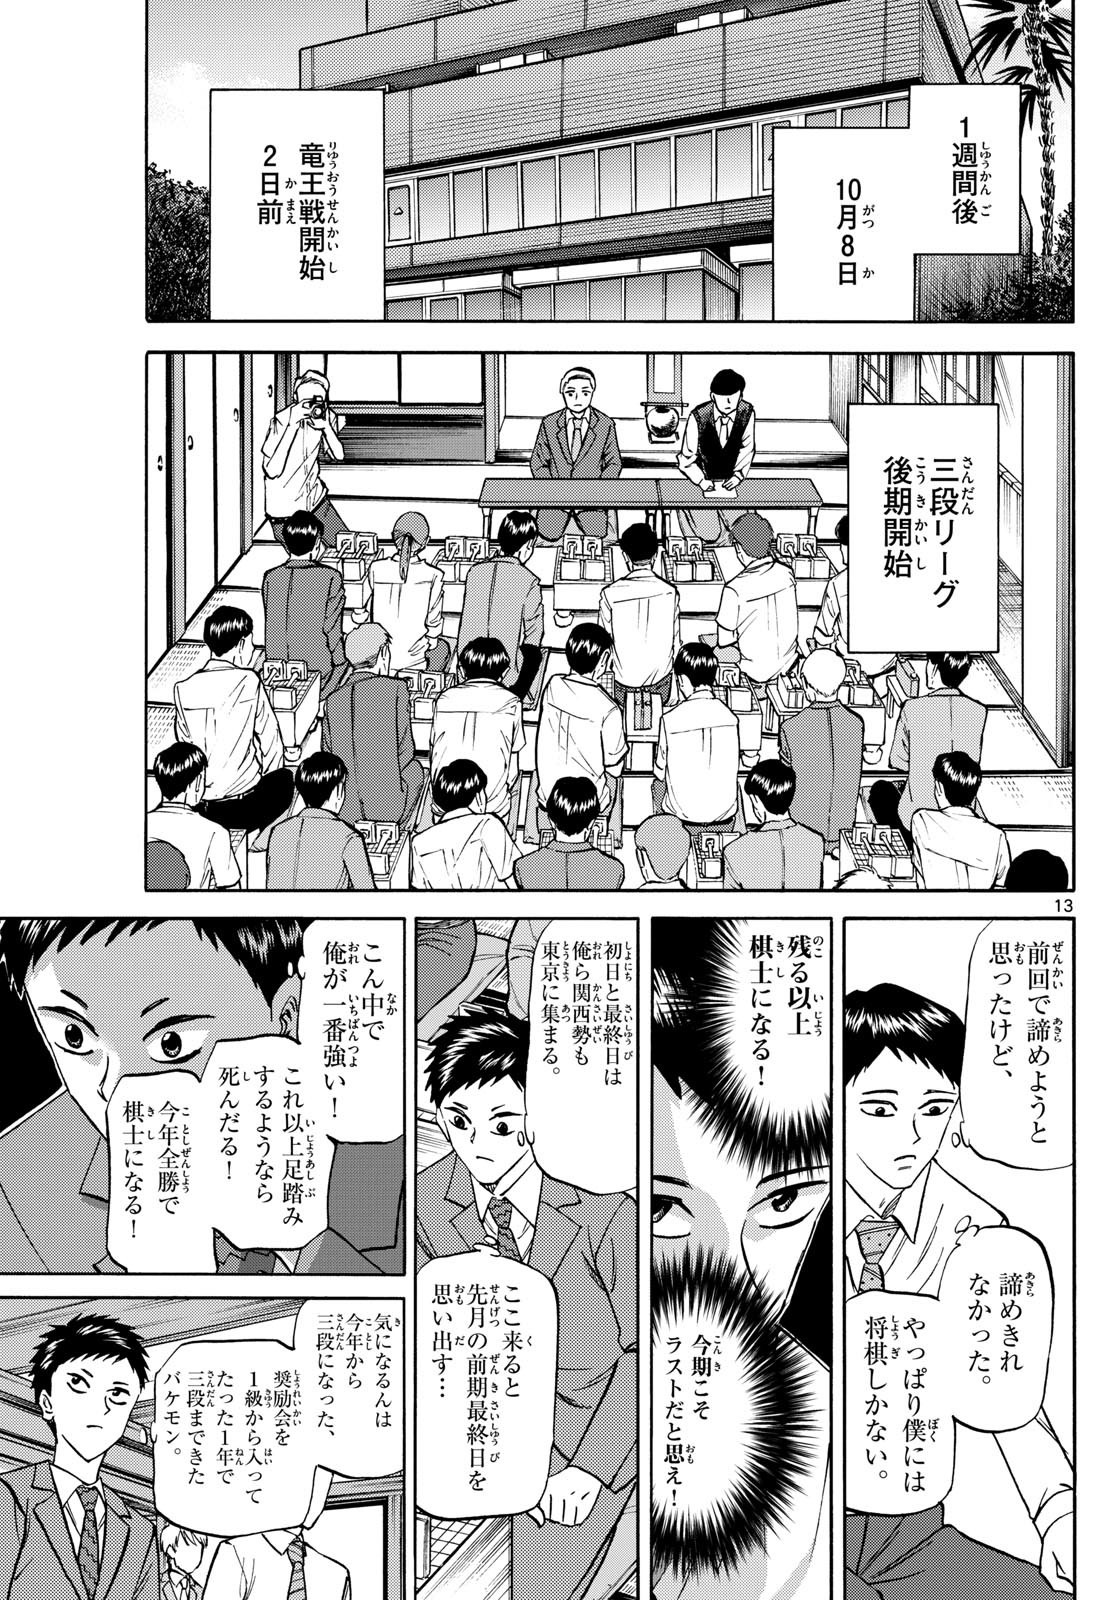 Ryu-to-Ichigo - Chapter 152 - Page 13